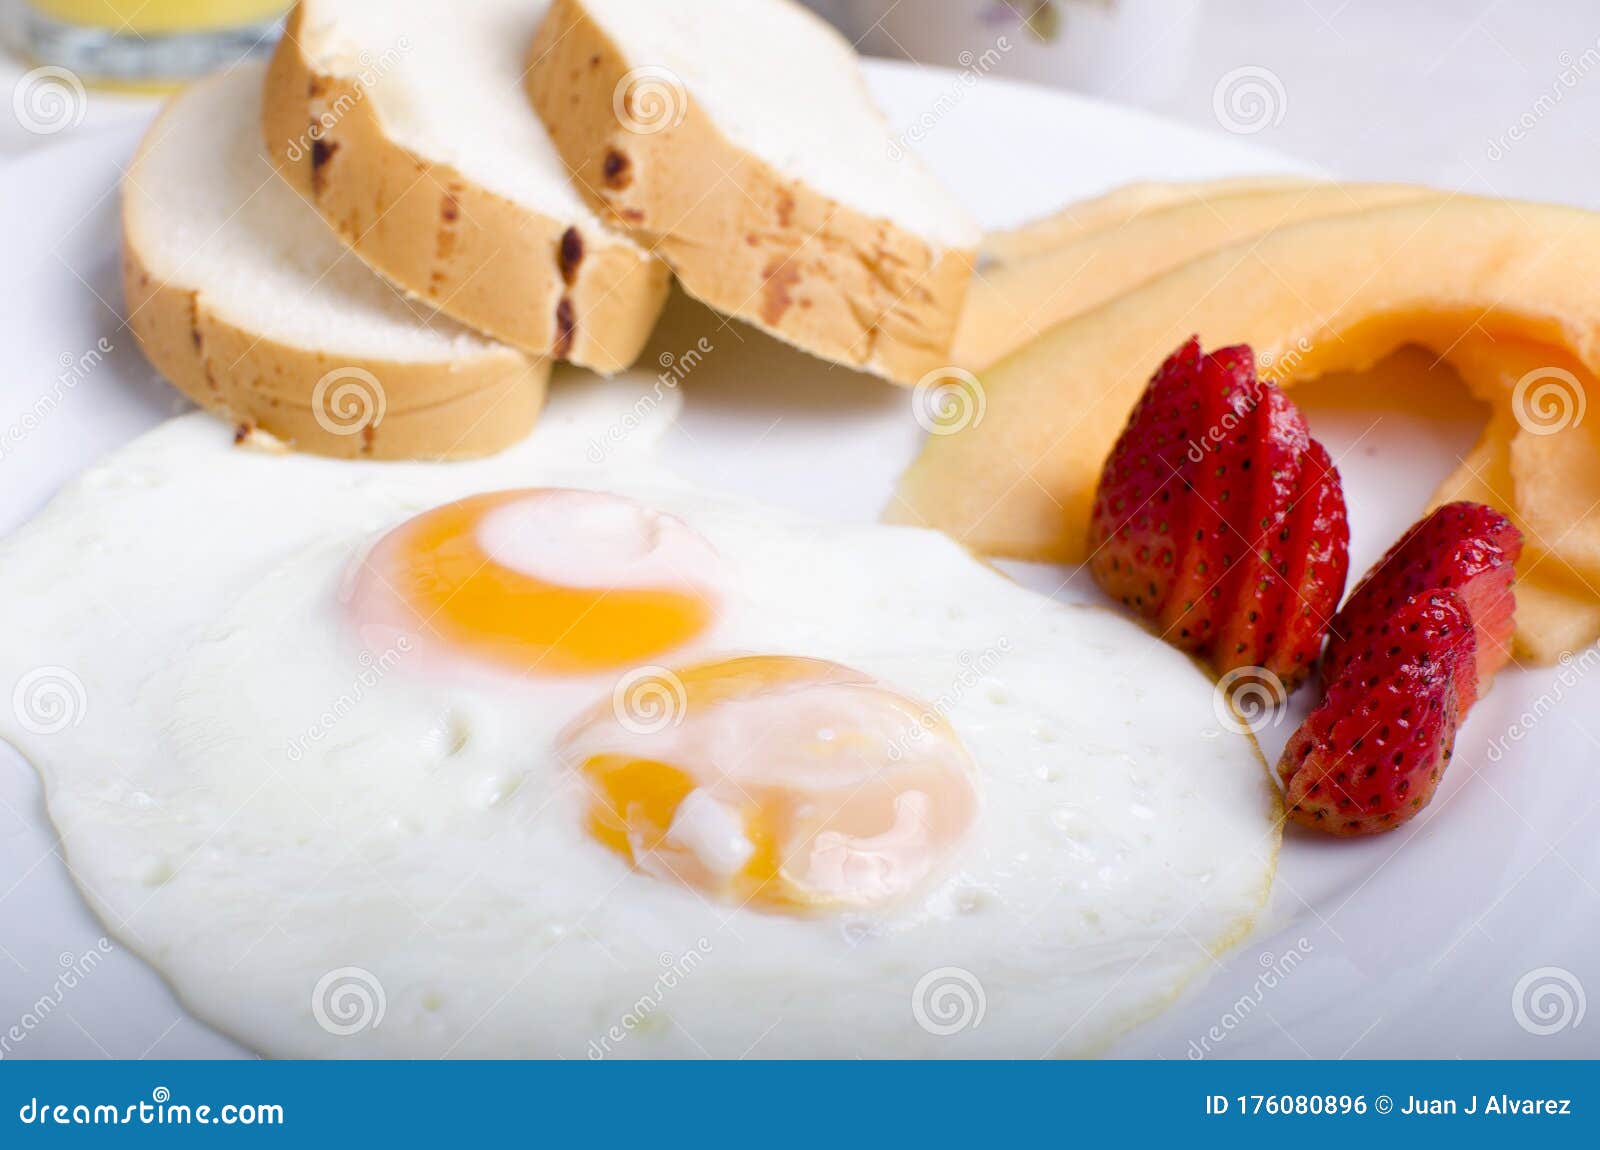 classic breakfast - desayuno clasico